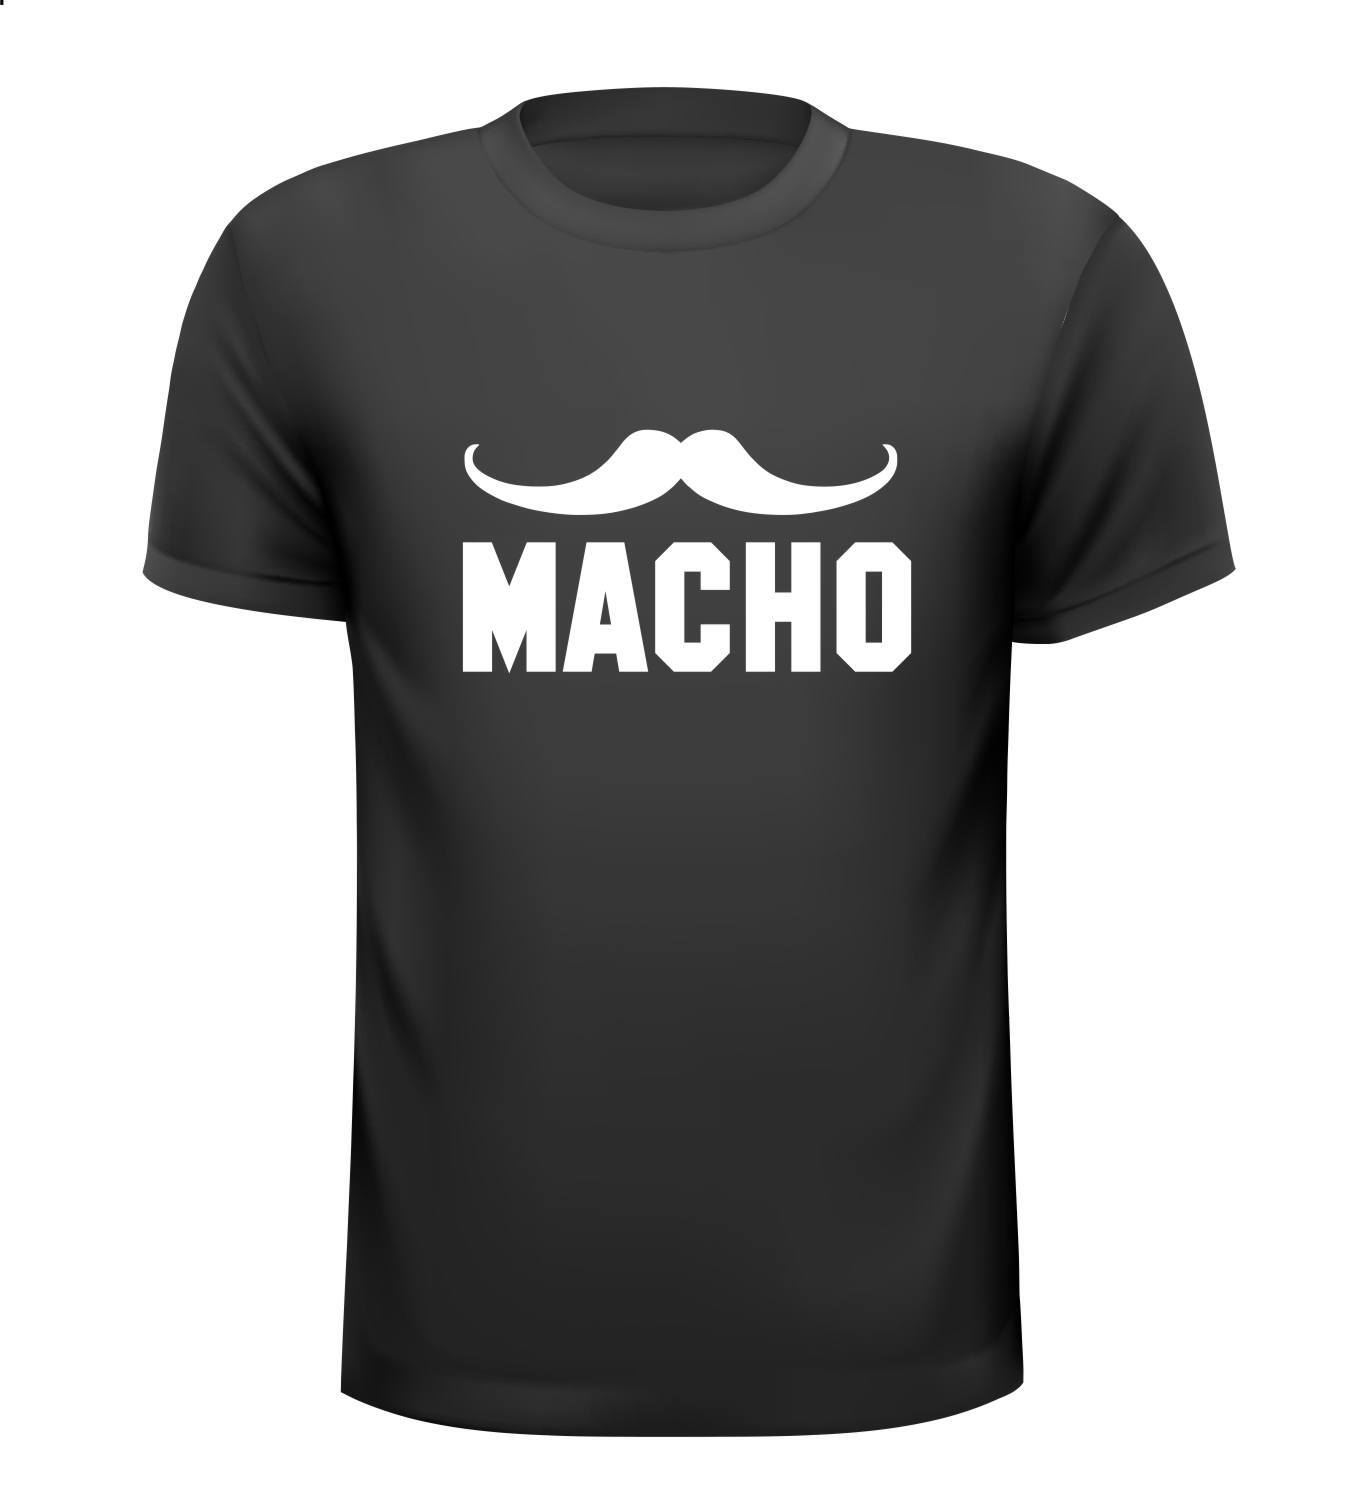 Macho stoer shirt